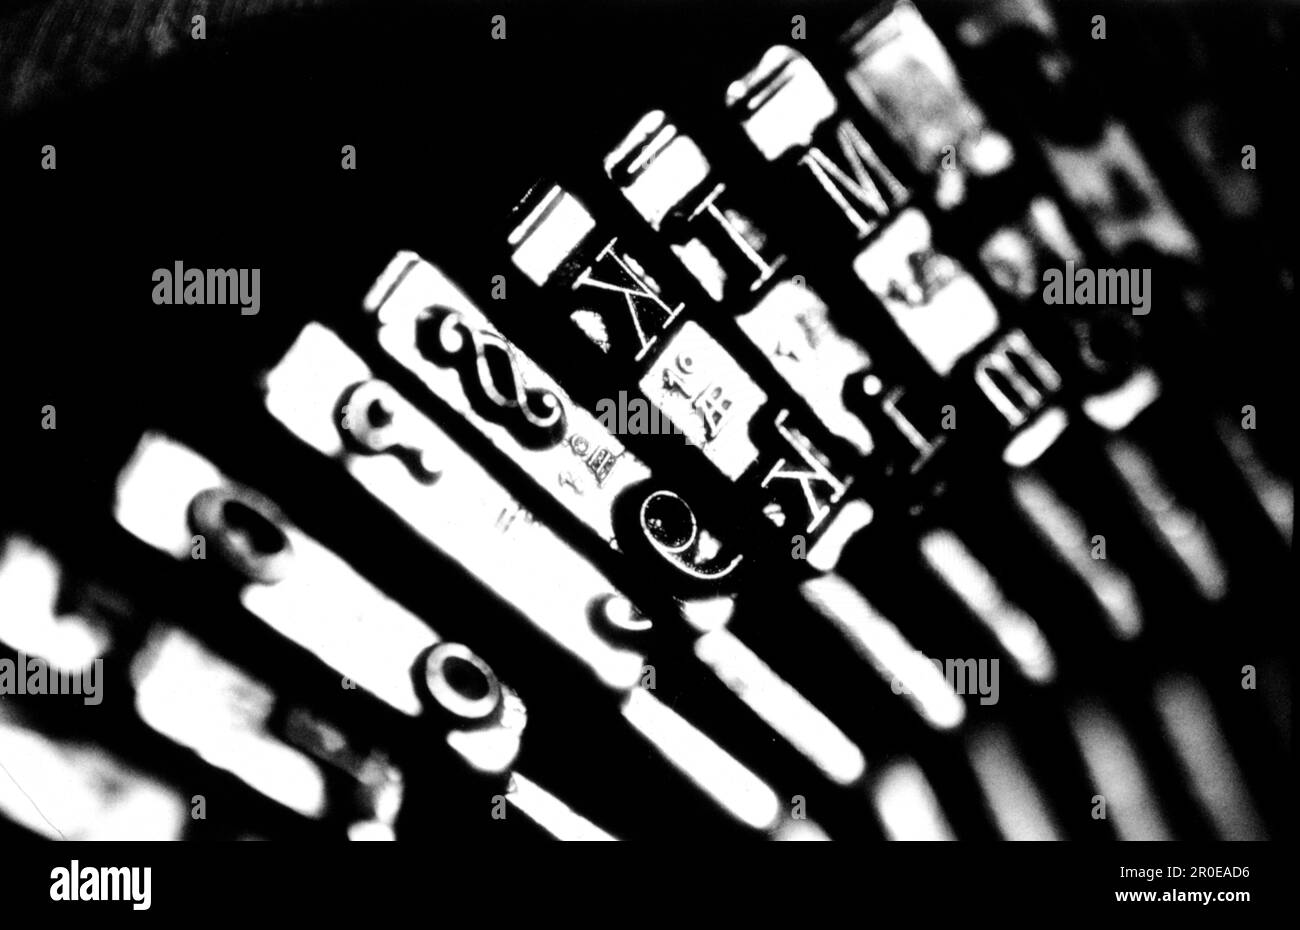 Schreibmaschine, Stillife Foto Stock